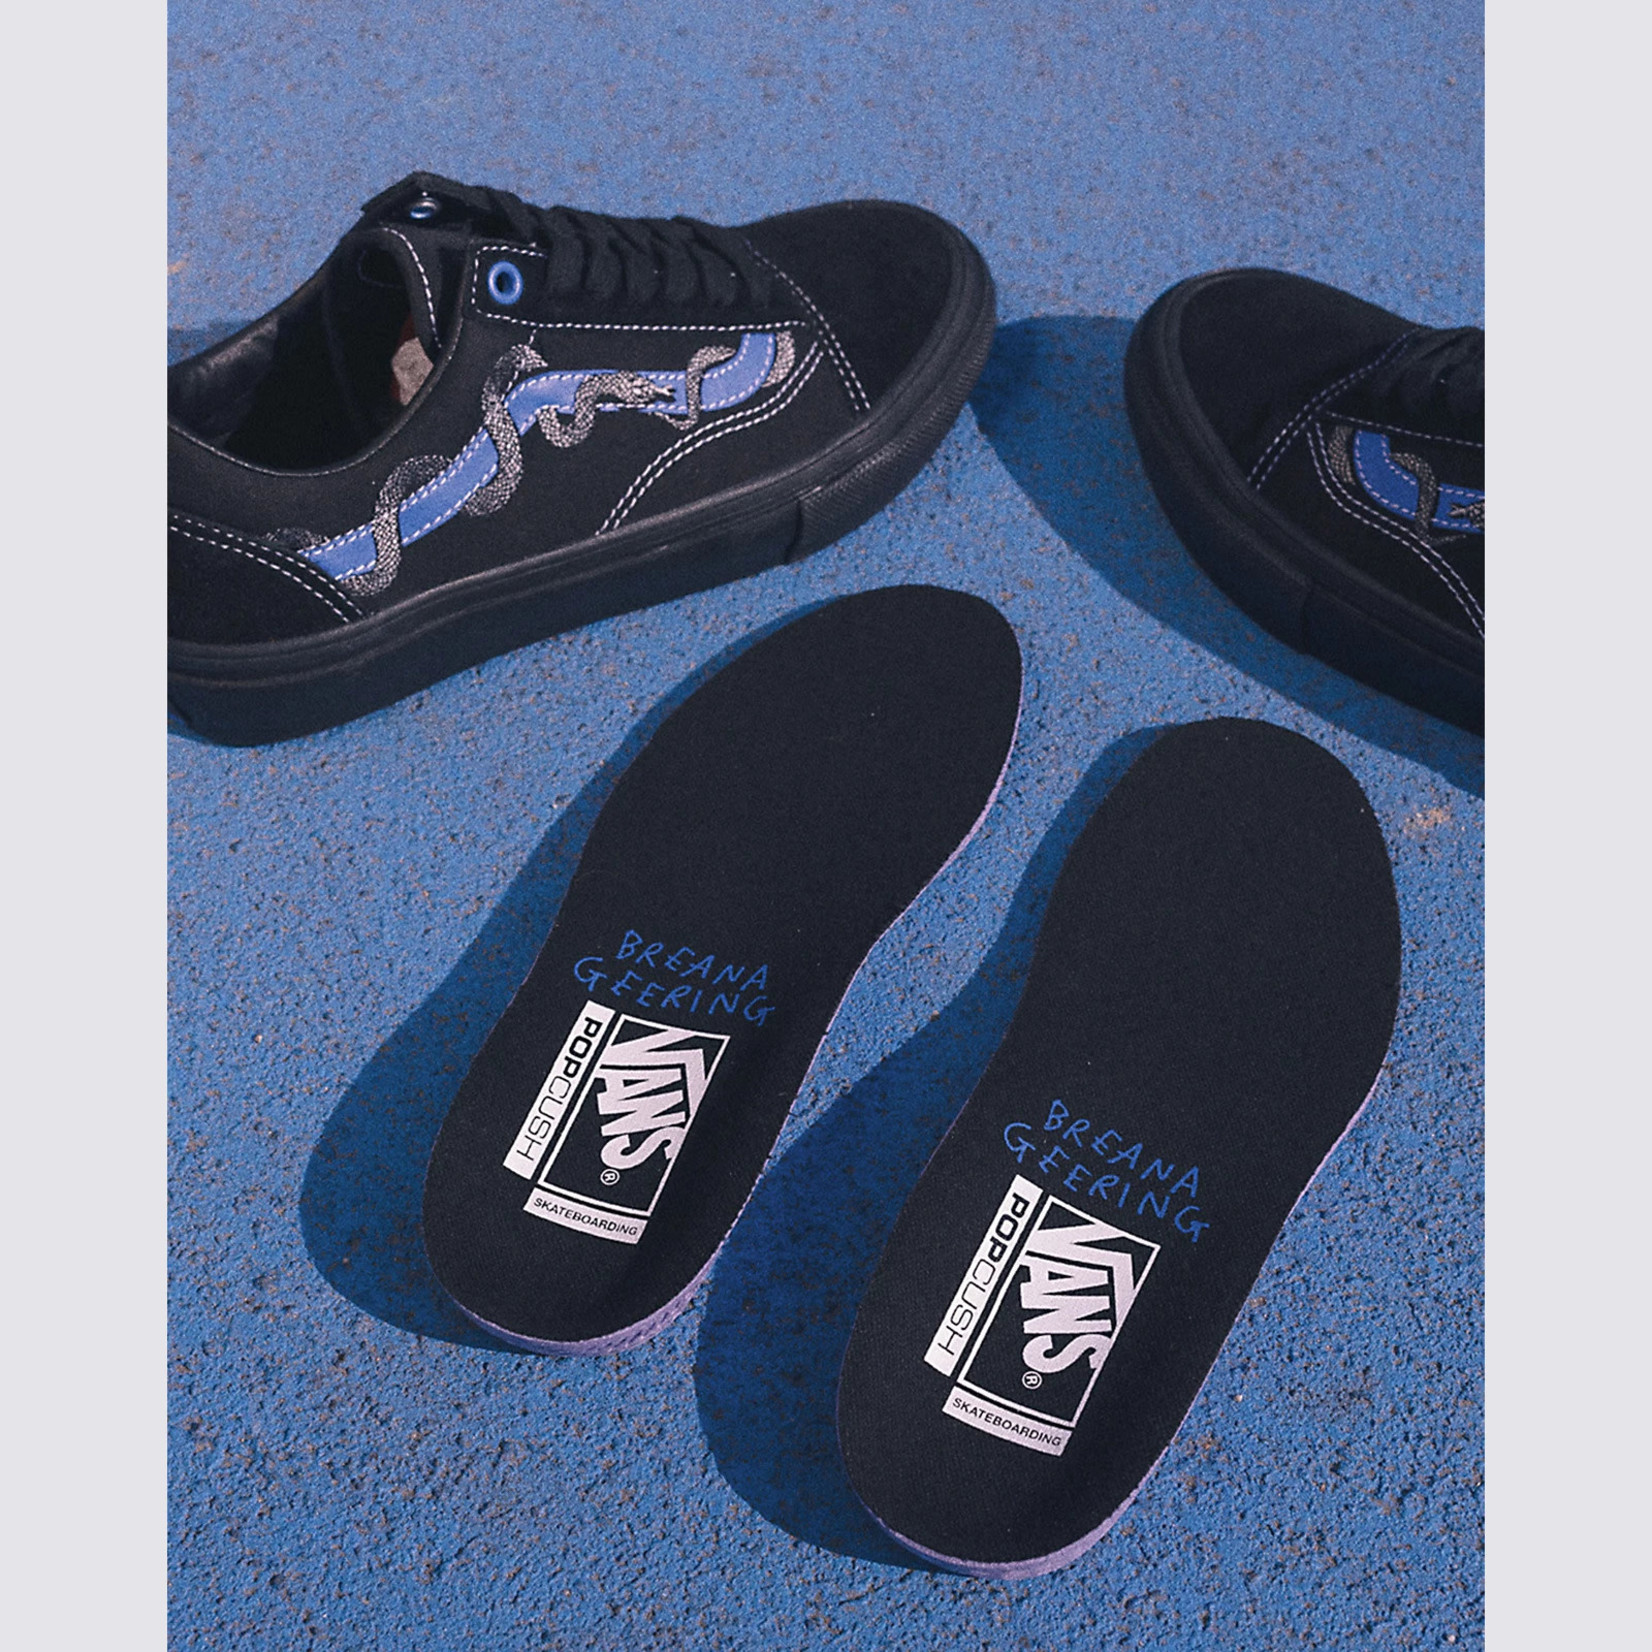 Vans Vans Breana Geering Skate Old School Shoes - Blue/Black